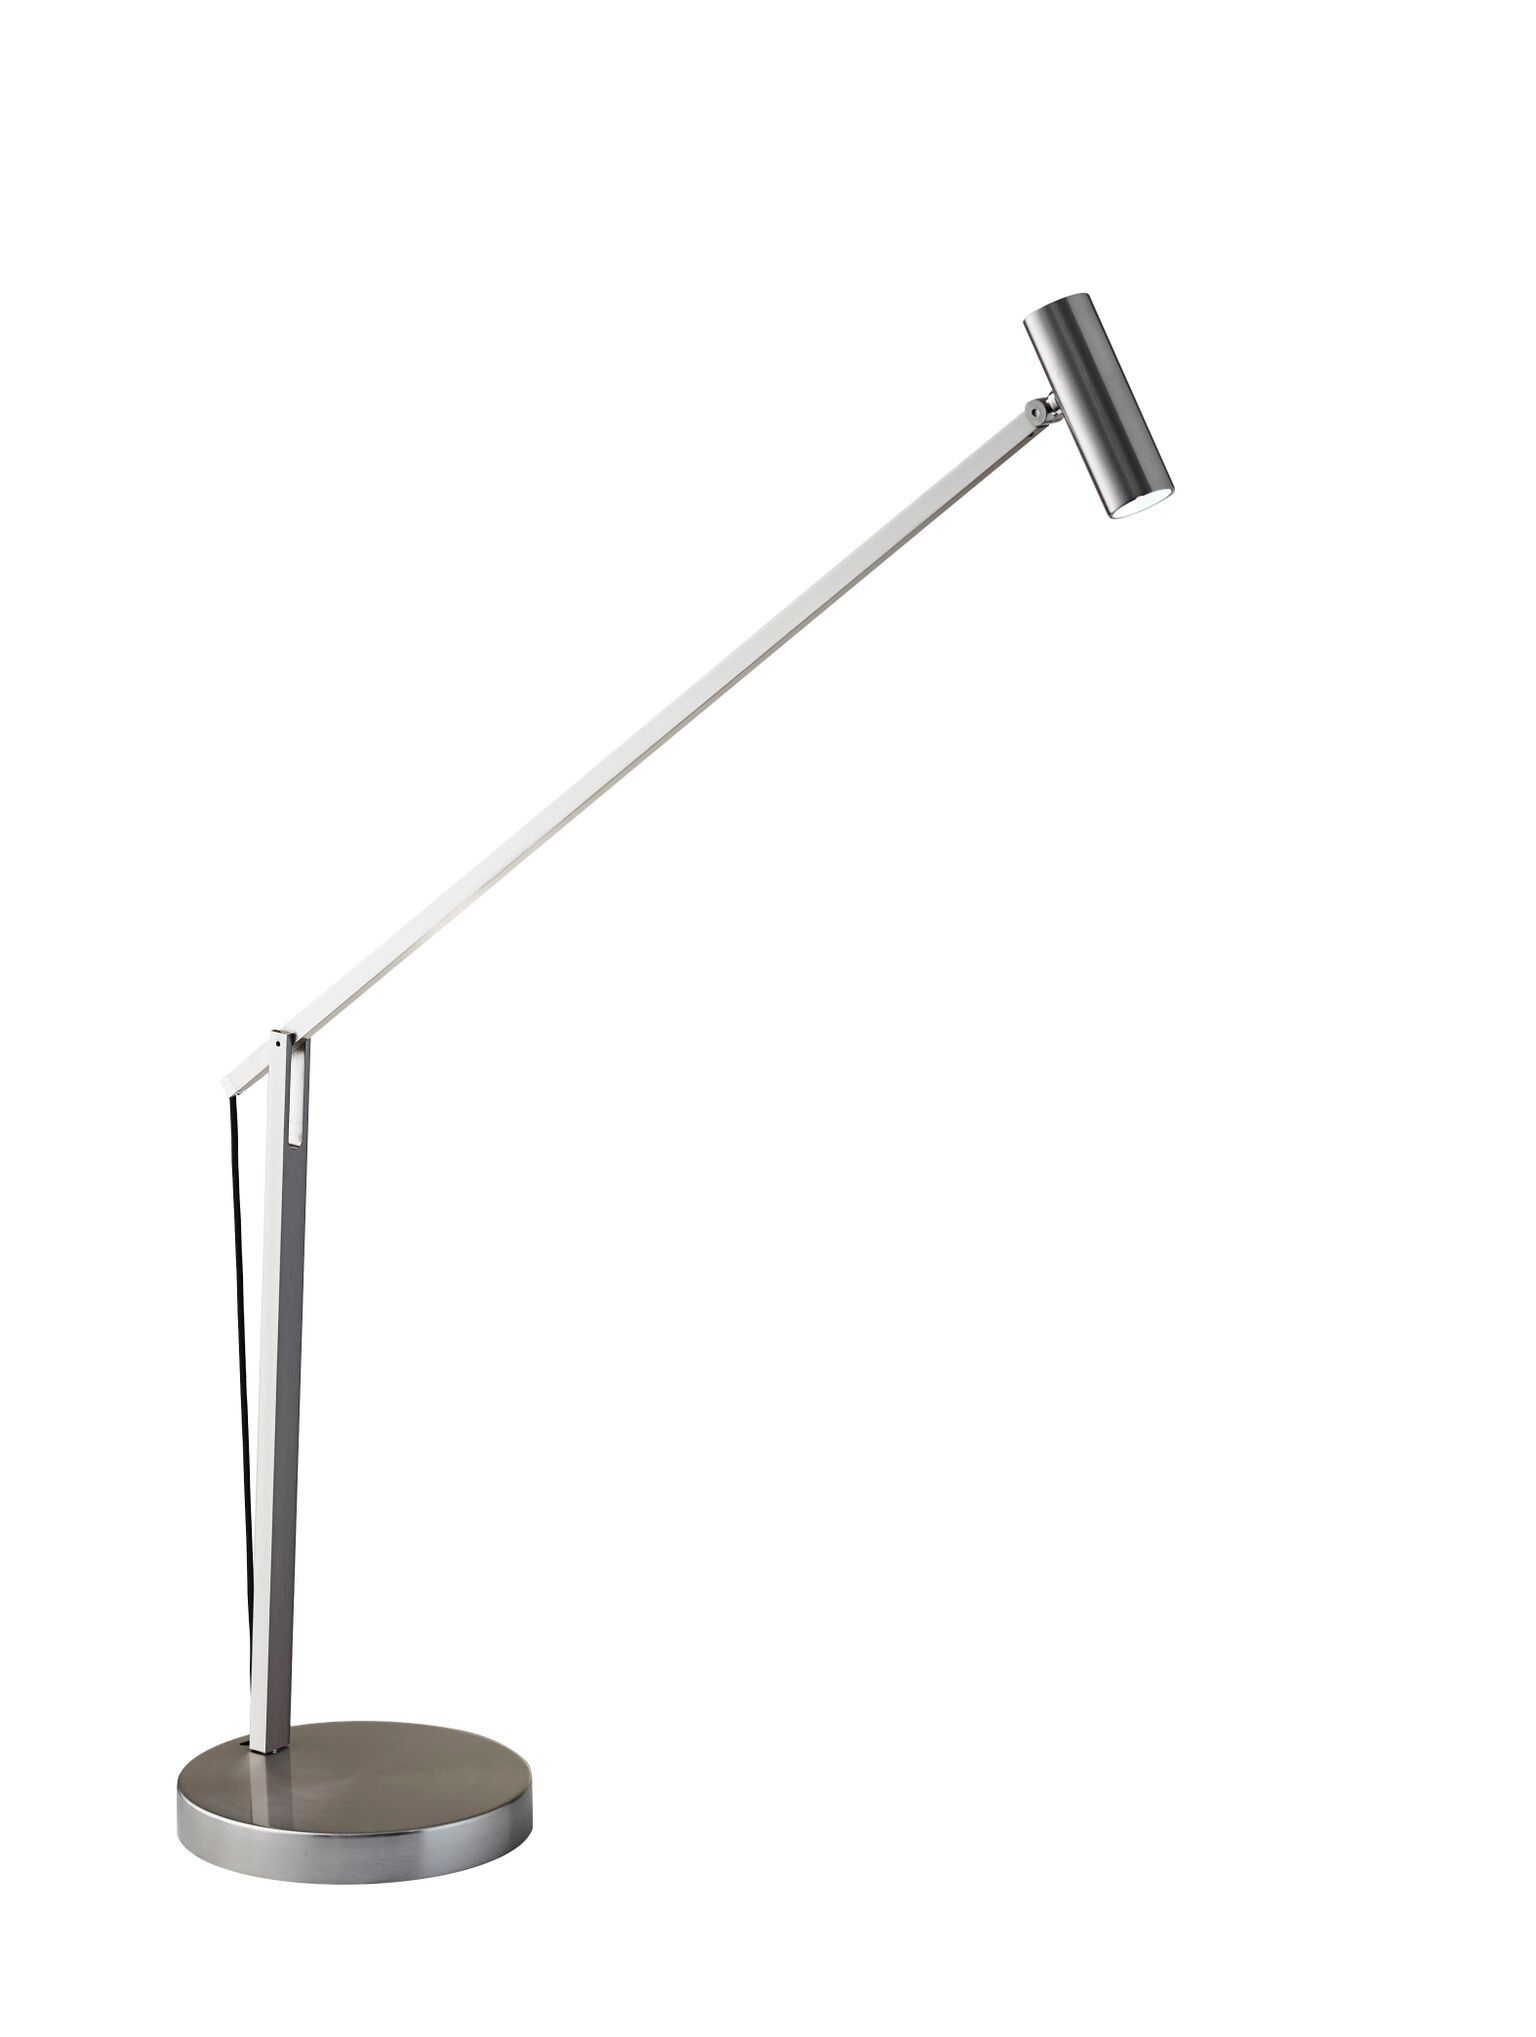 Crane Desk Lamp - Steel Lamps Adesso 